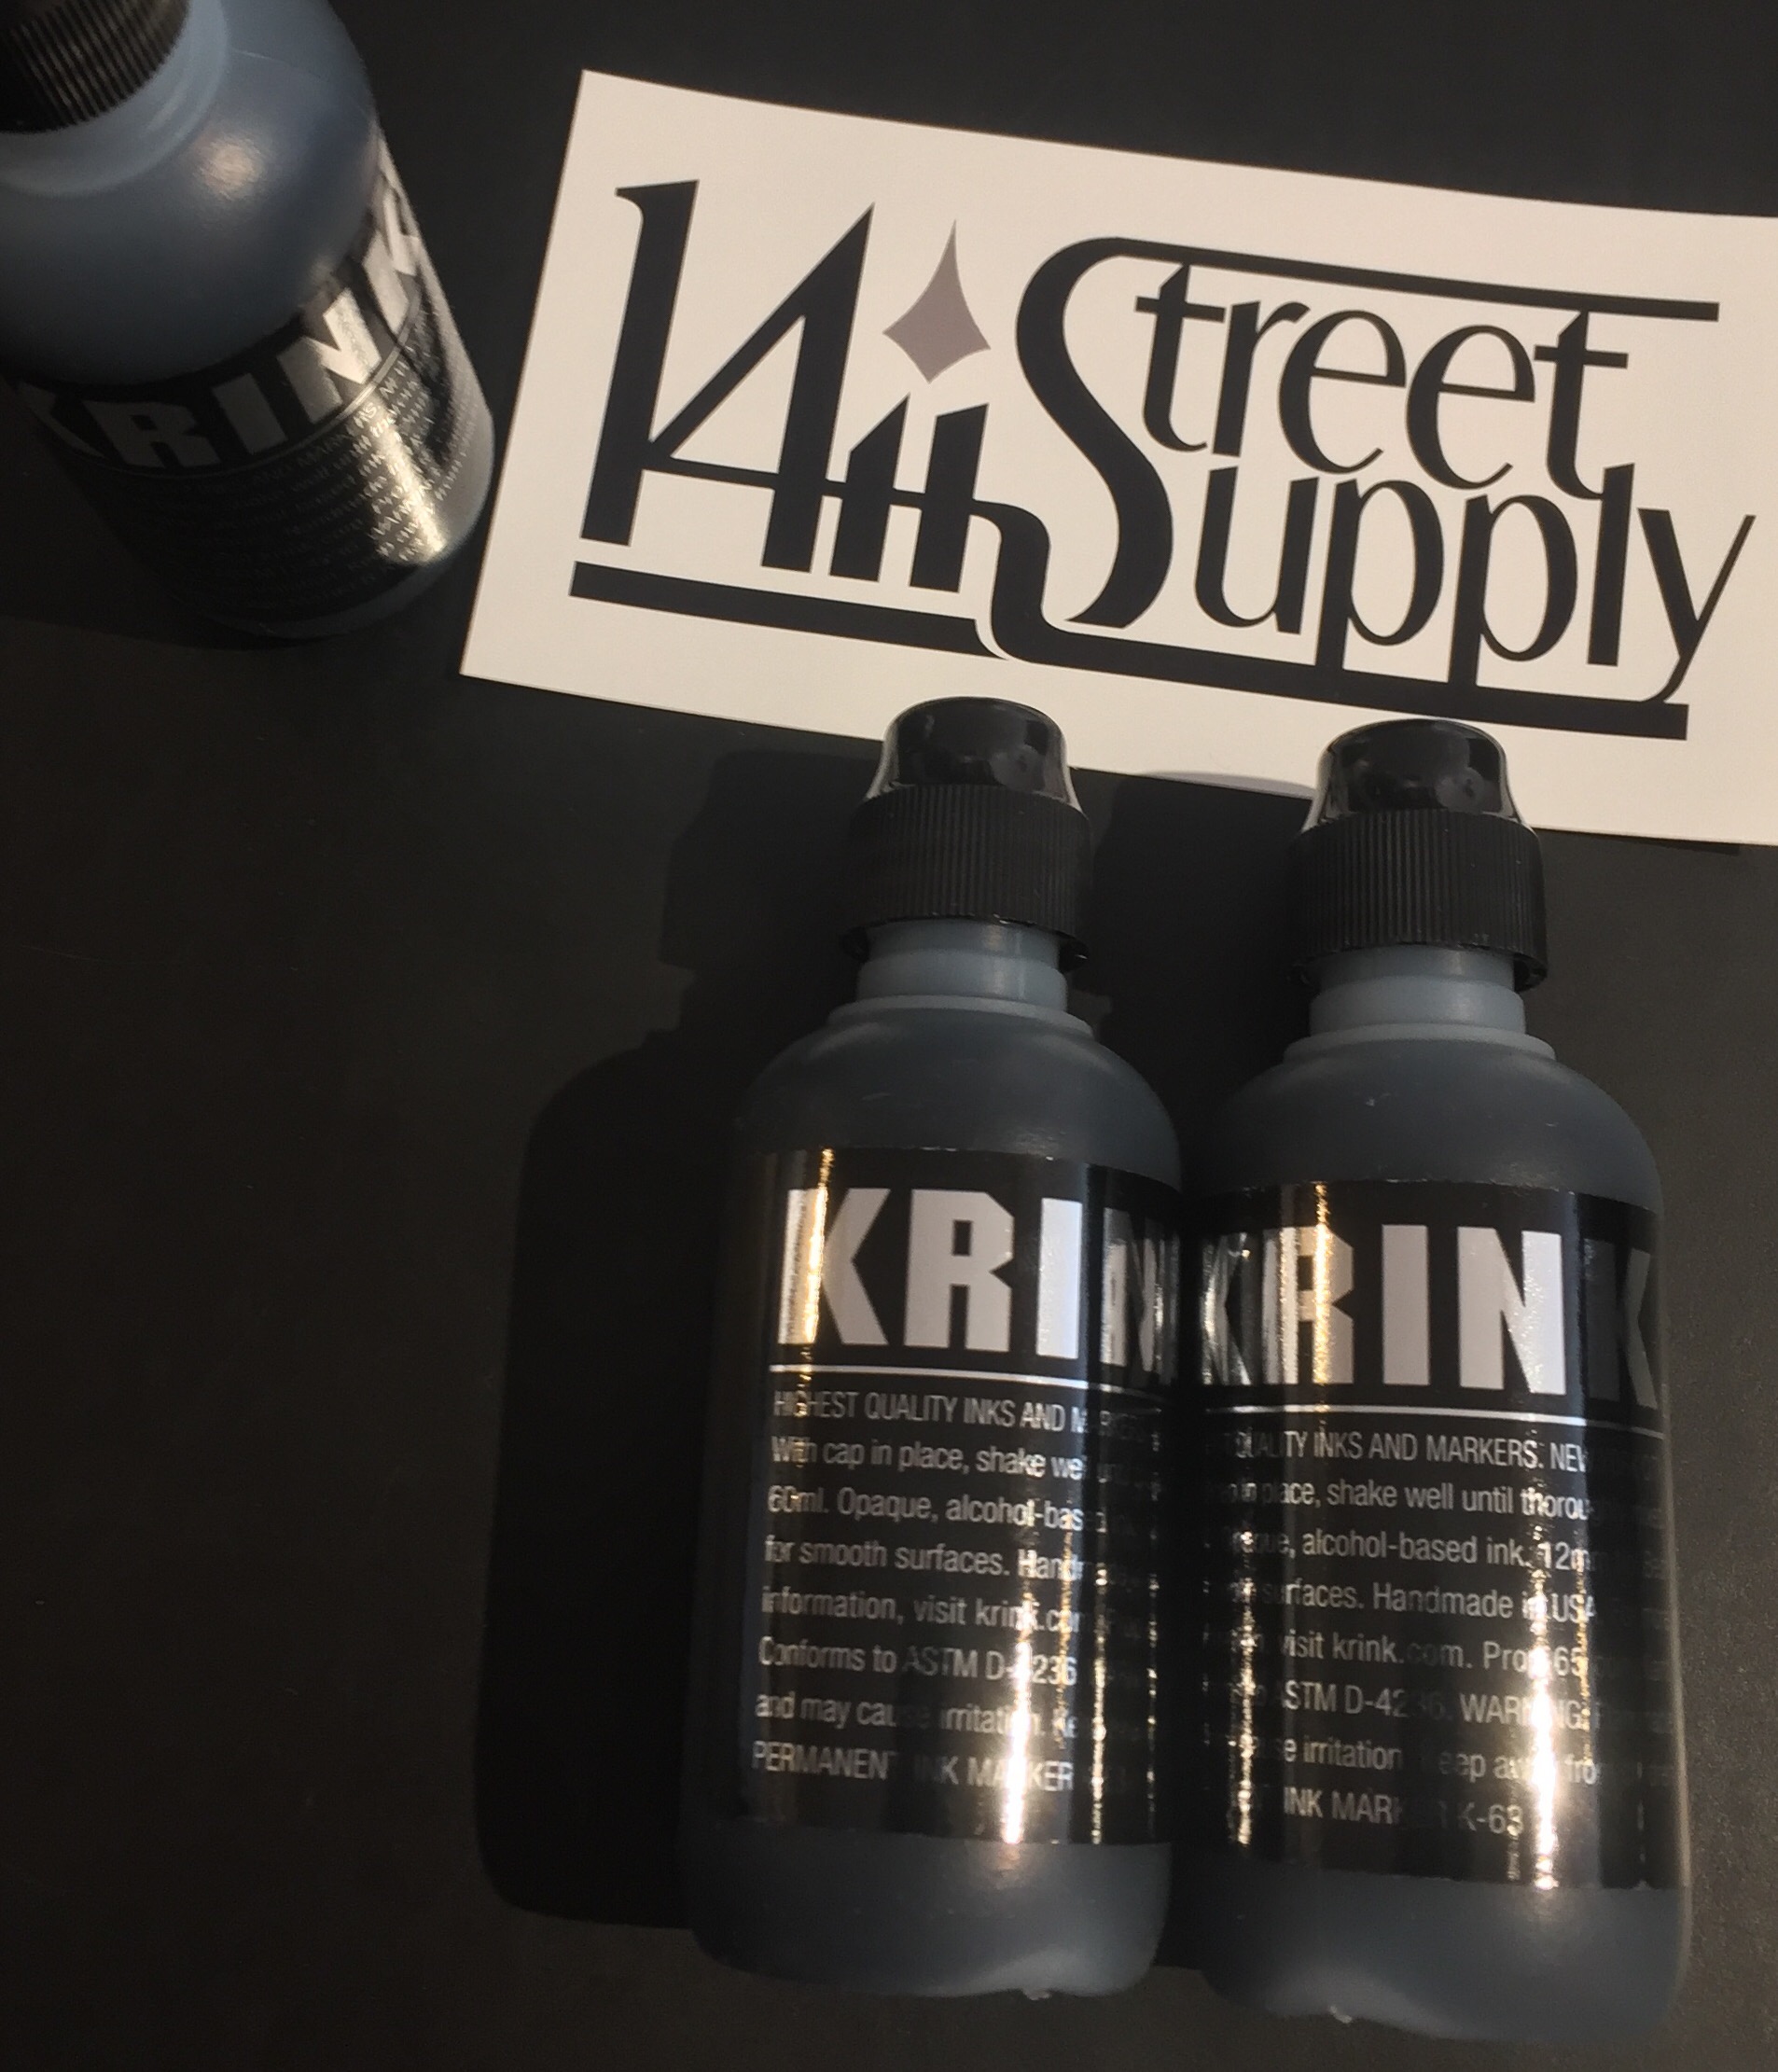 Krink Super Black Permanent Ink Marker - Set of 4